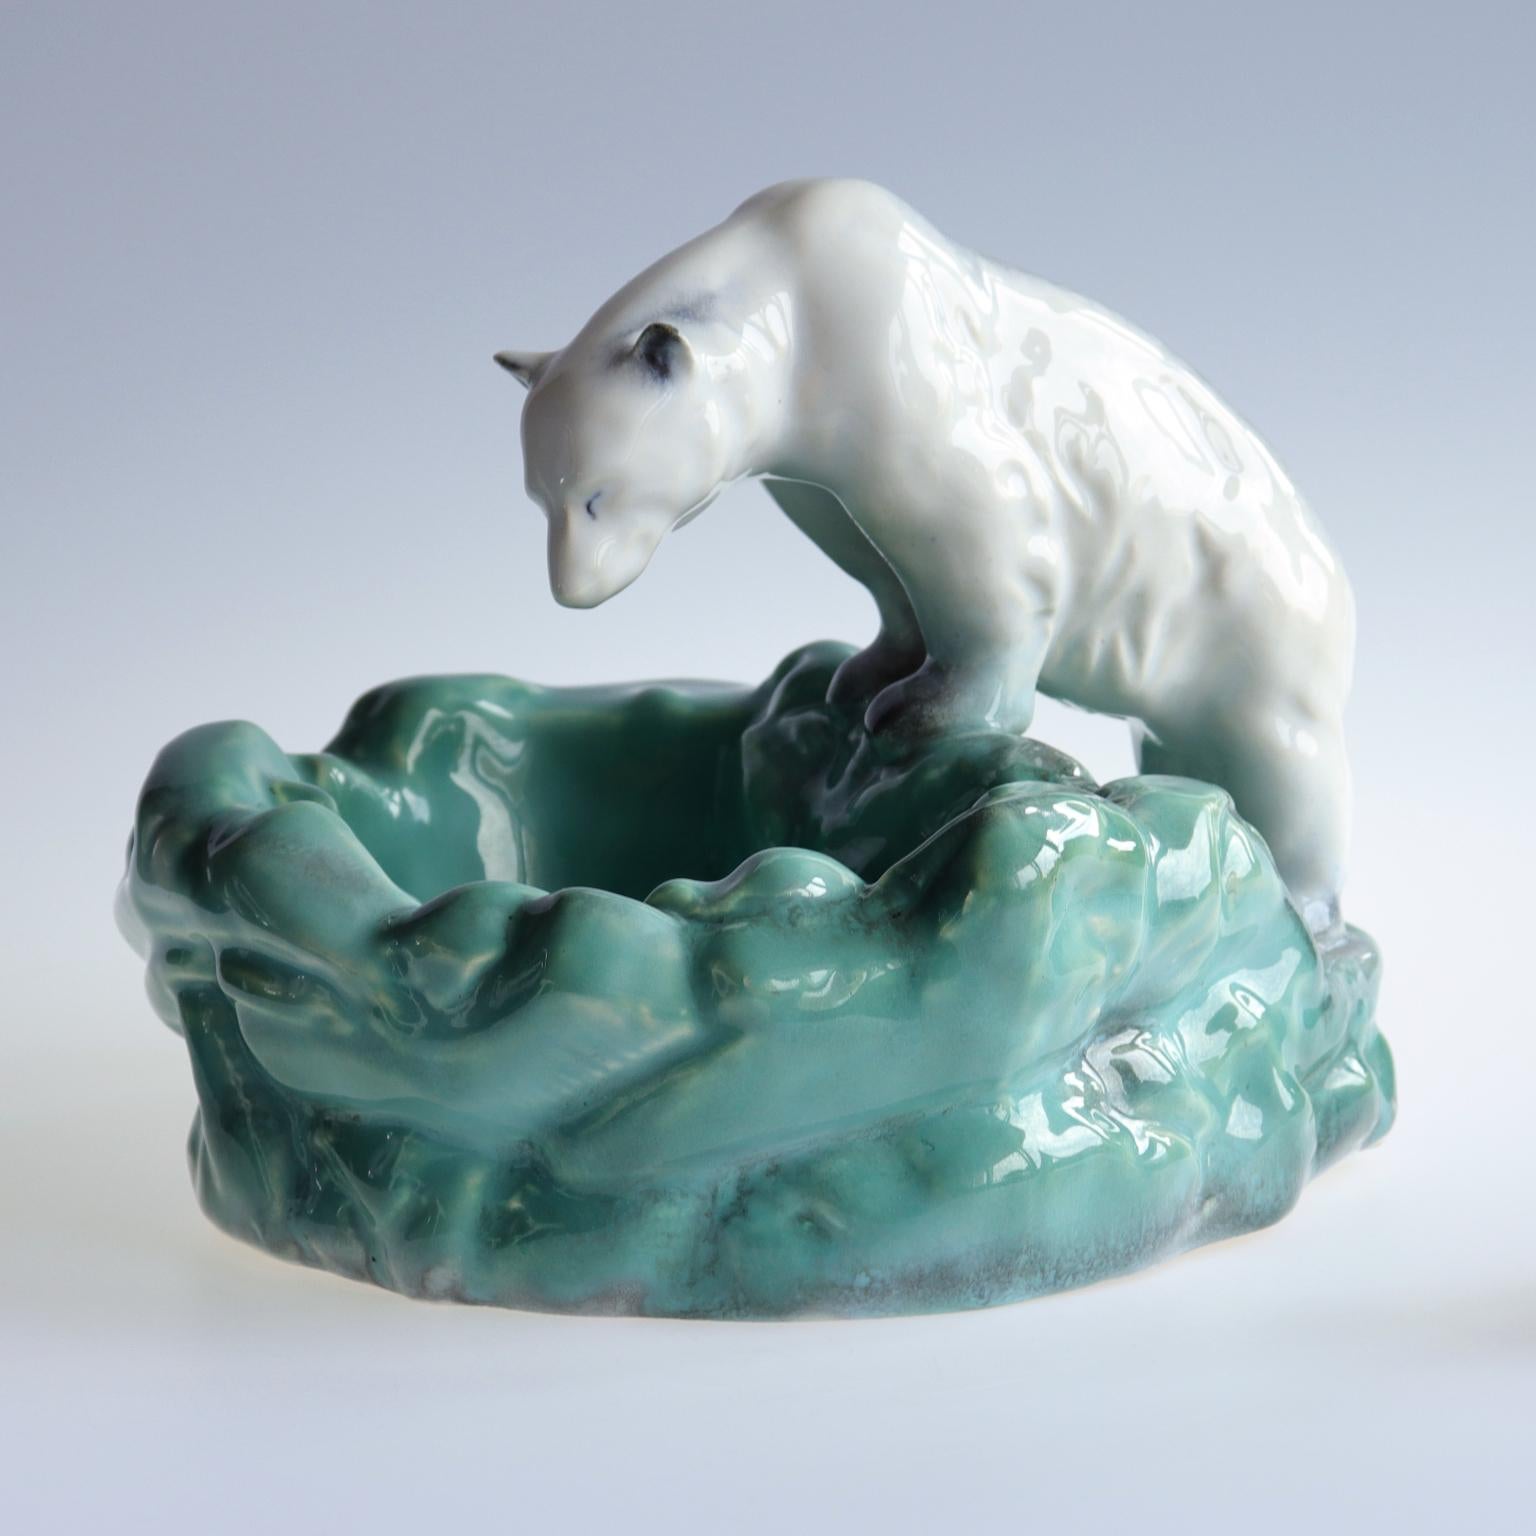 Eisbär im Eis-Pool, eine Keramikschale, die in den 1930er Jahren von Ditmar Urbach in der Tschechoslowakei hergestellt wurde. Die Schale wurde zu Ehren von Nora, der ersten Eisbärin im Prager Zoo, entworfen. Das Stück ist markiert, Ditmar Urbach